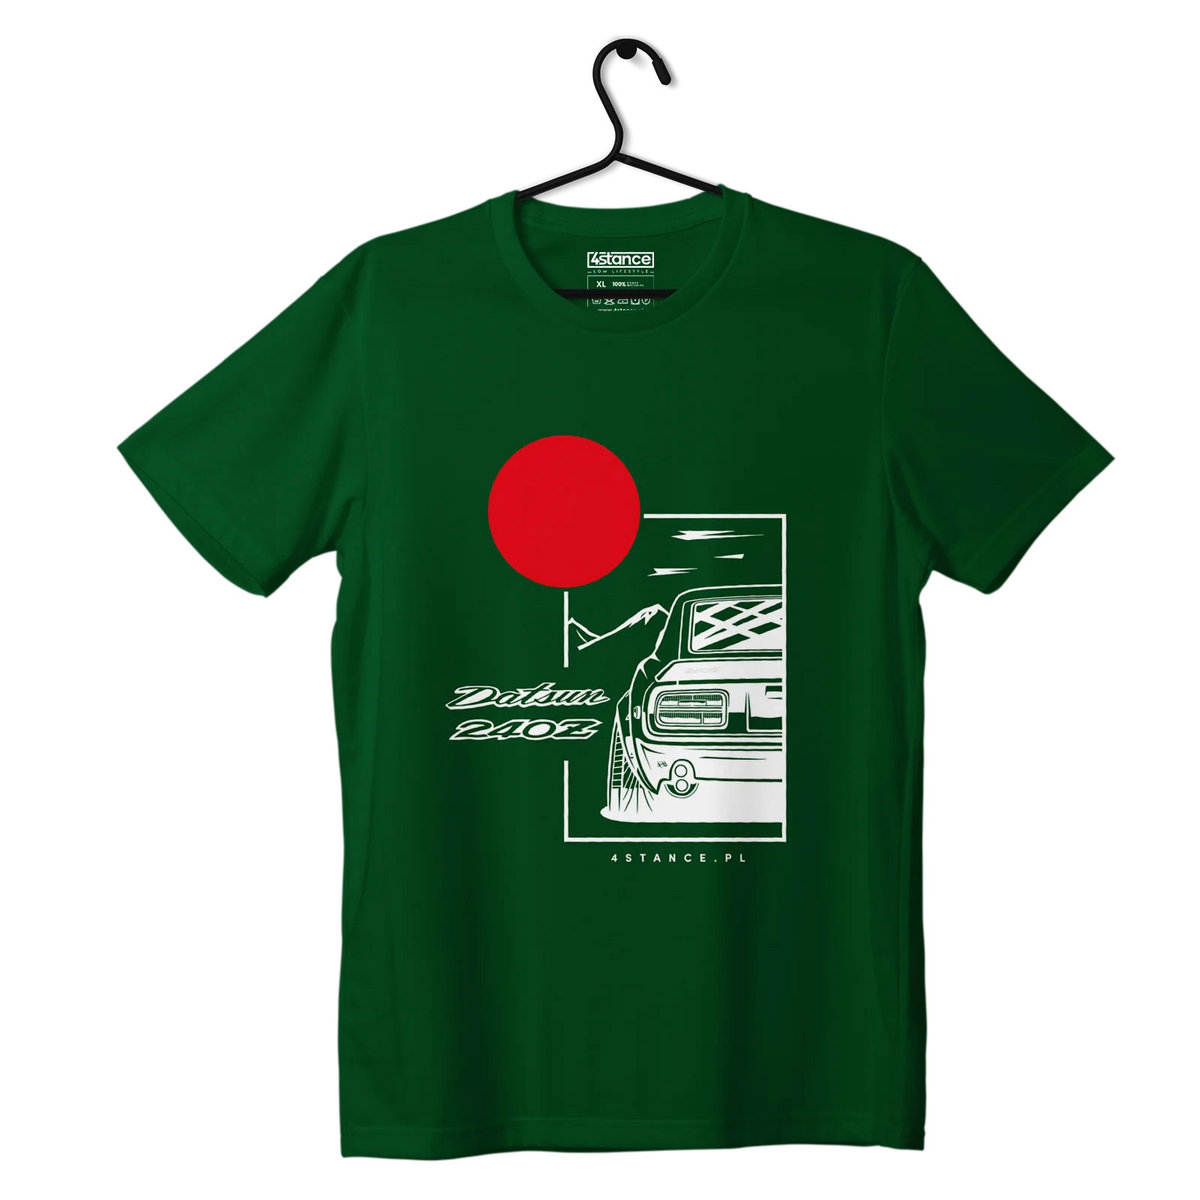 Zdjęcia - Odzież motocyklowa Datsun T-shirt koszulka  240Z zielona-XL 